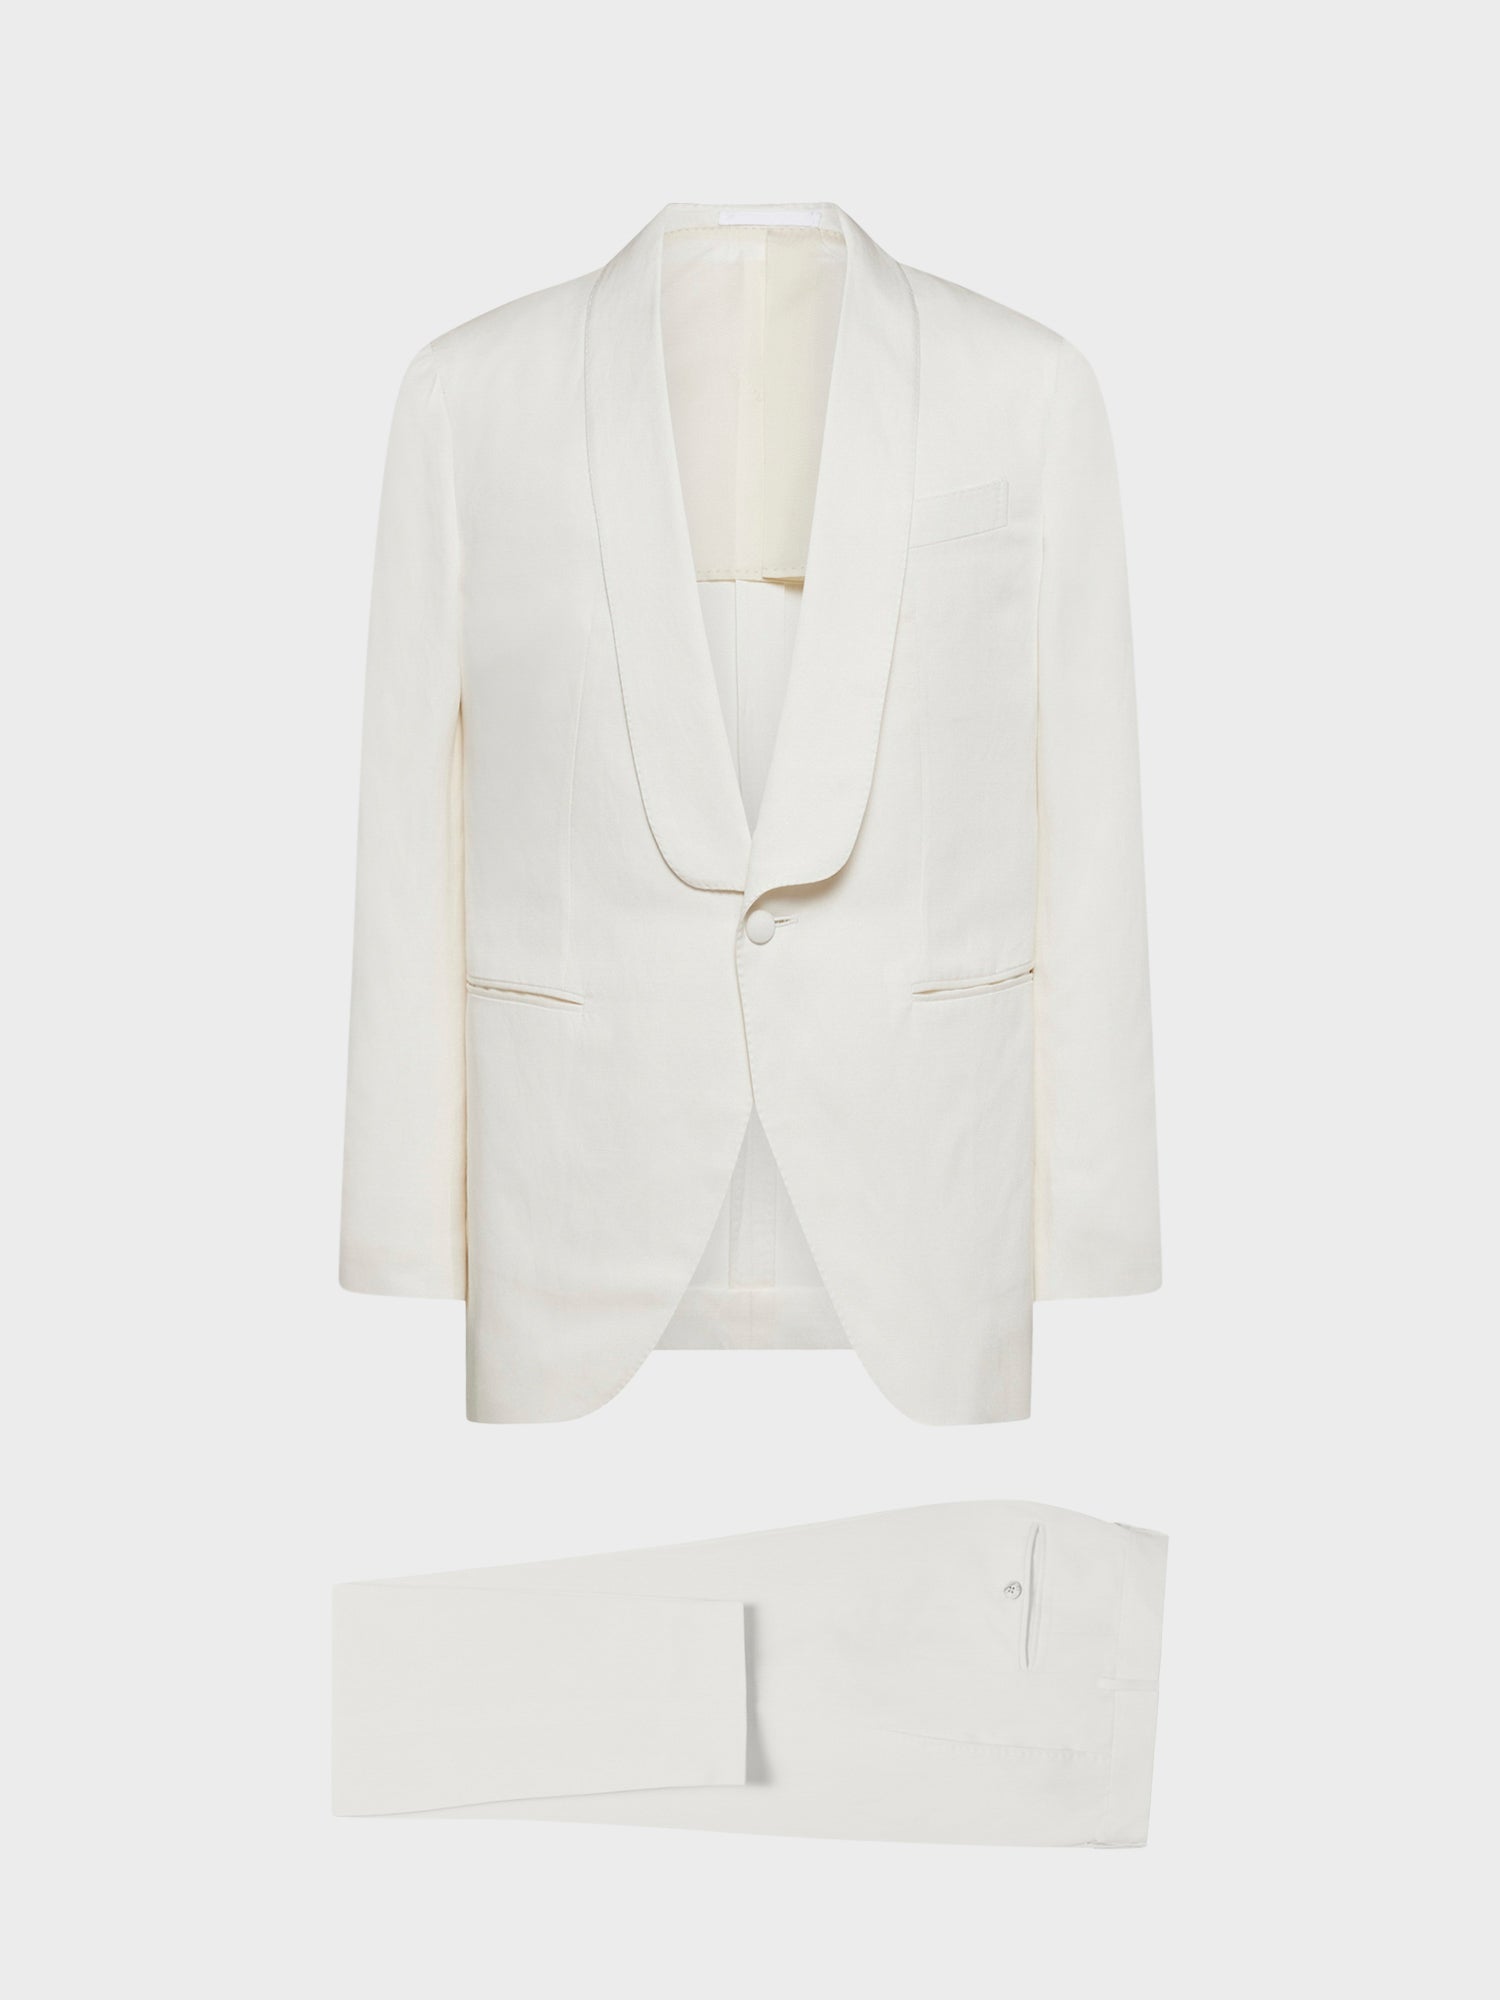 Caruso Menswear Abbigliamento Uomo Abito Aida in seta e lino bianco giacca e pantaloni